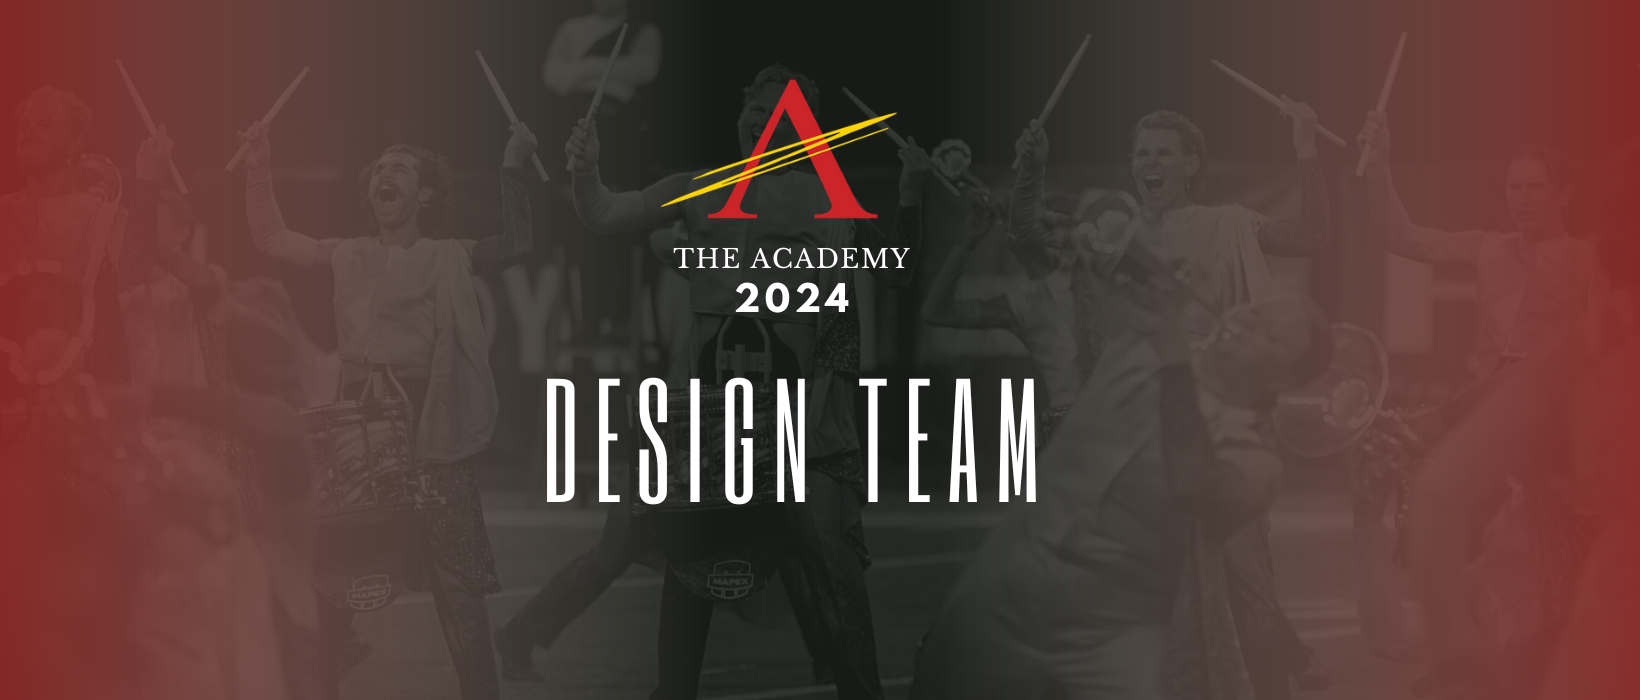 Design Team Banner 